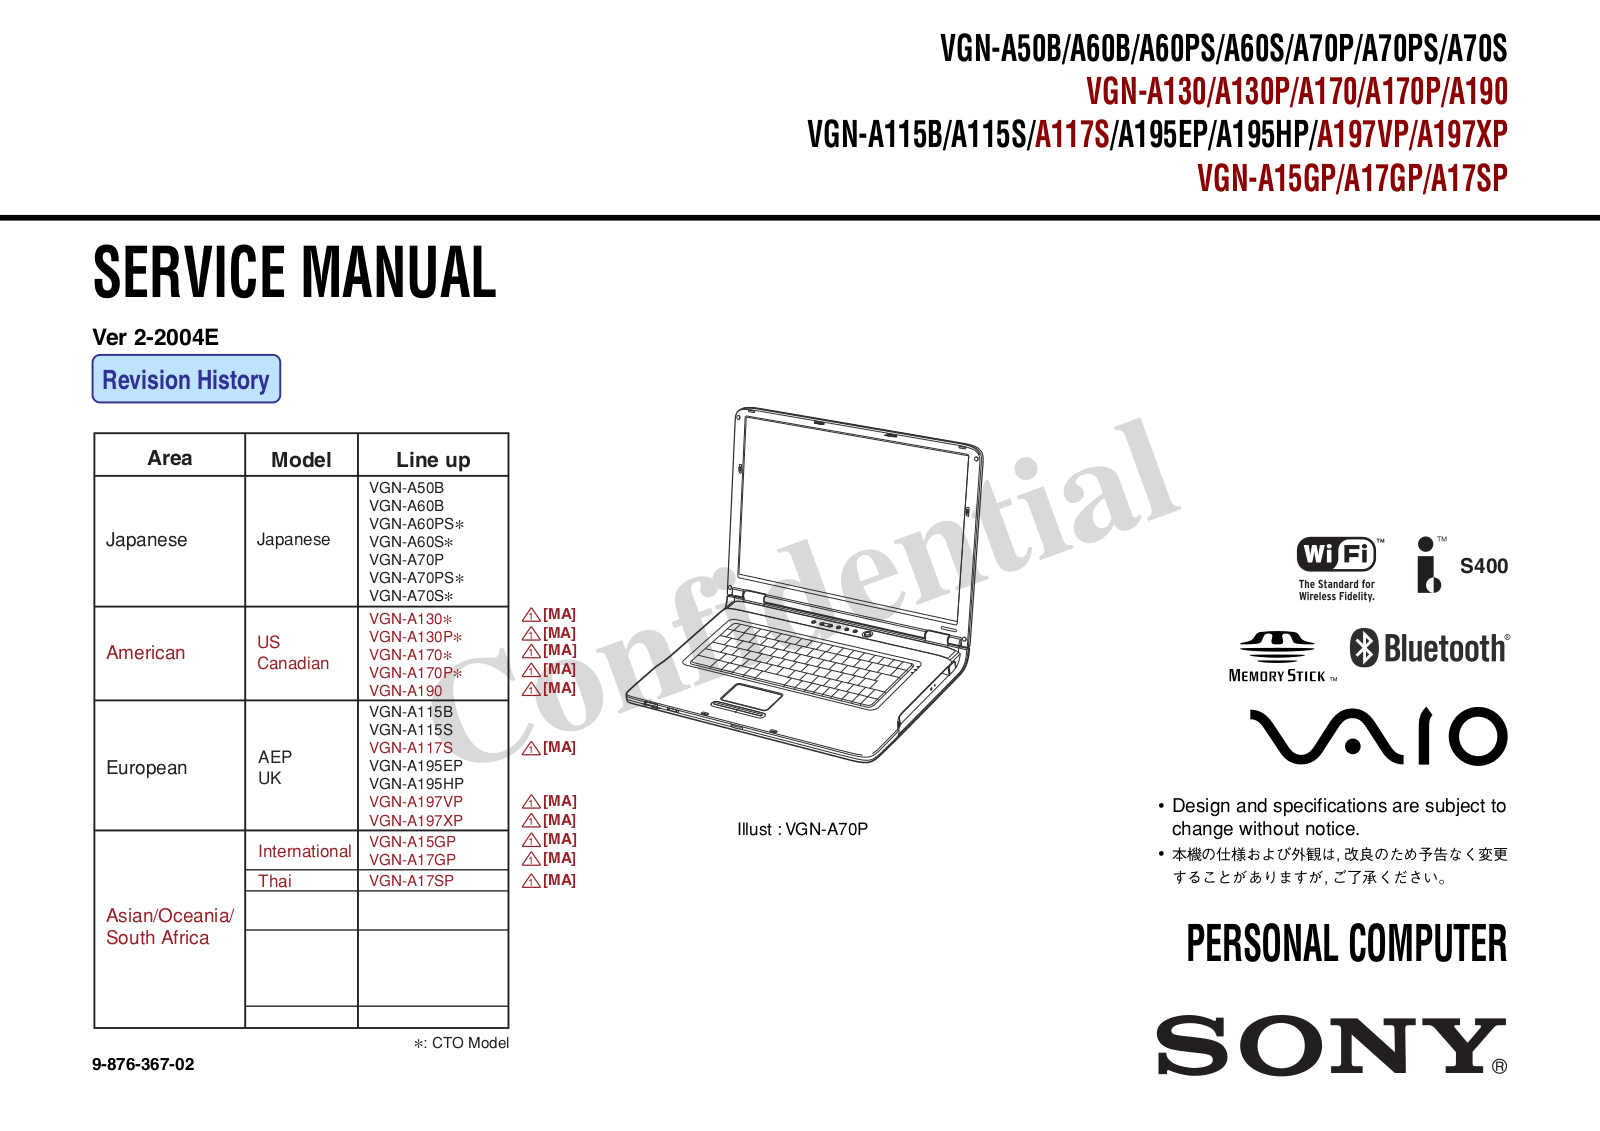 SONY VGN-A50, VGN-A60, VGN-A70, VGN-A130, VGN-A170 Service Manual